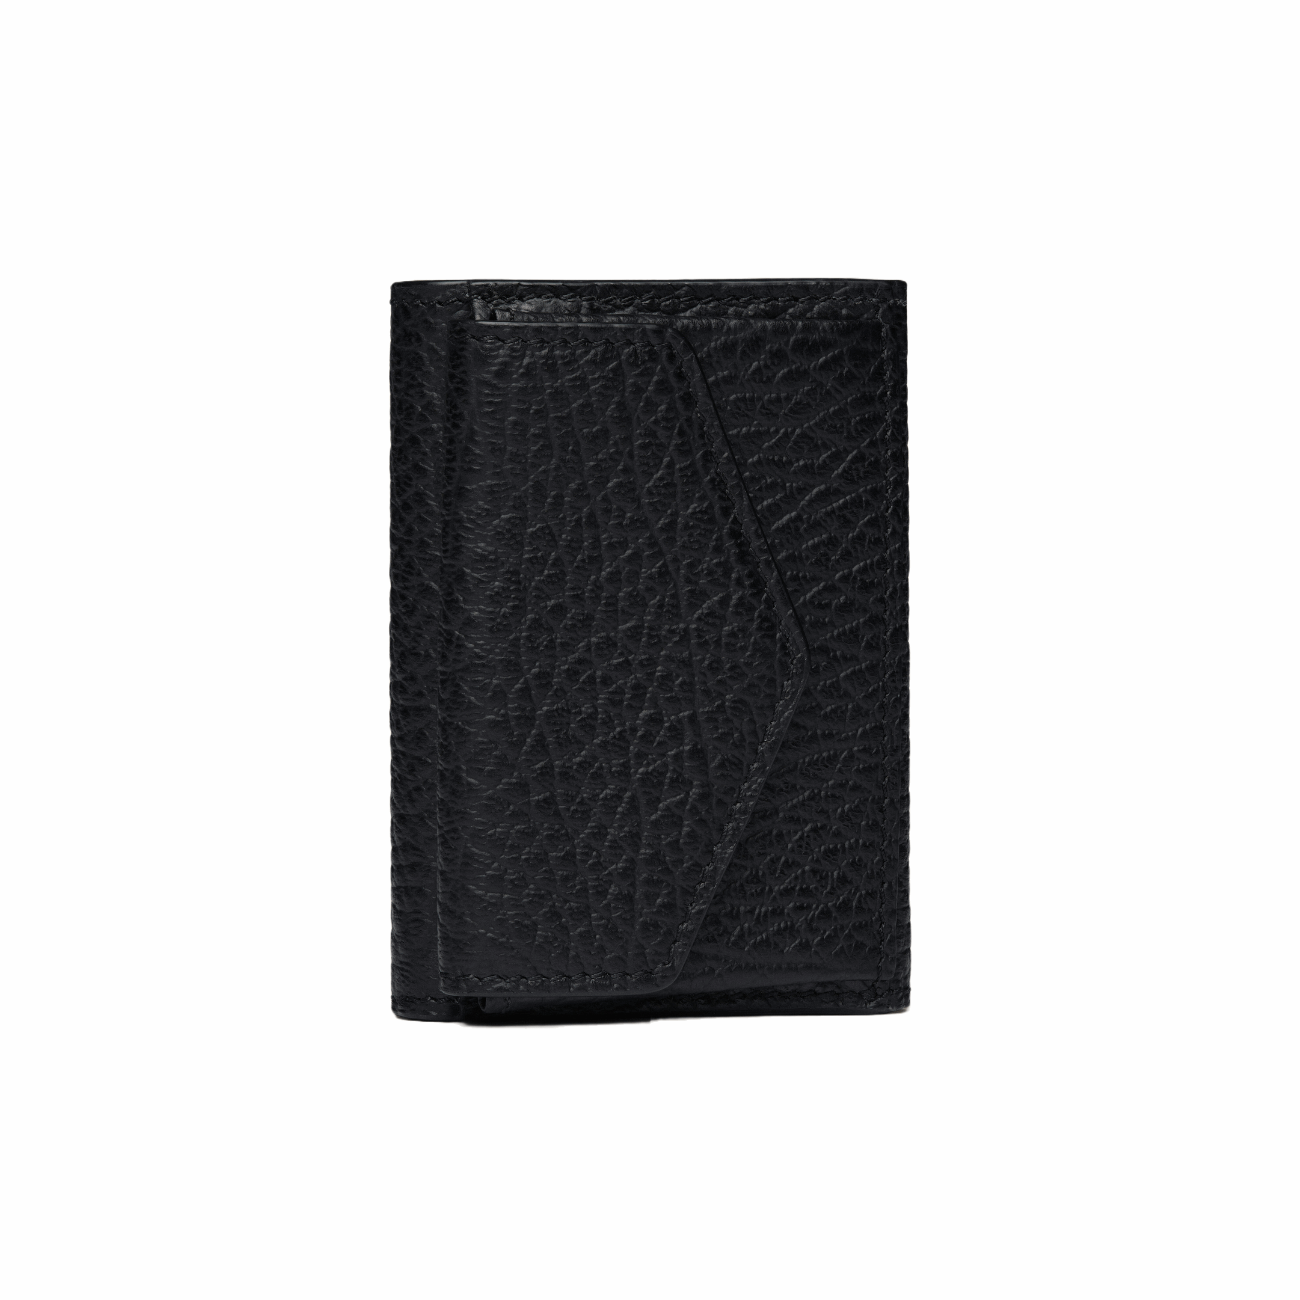 Maison Margiela S36UI0416P4455T8013 Four Stitches Women's Pocket Wallet, Black